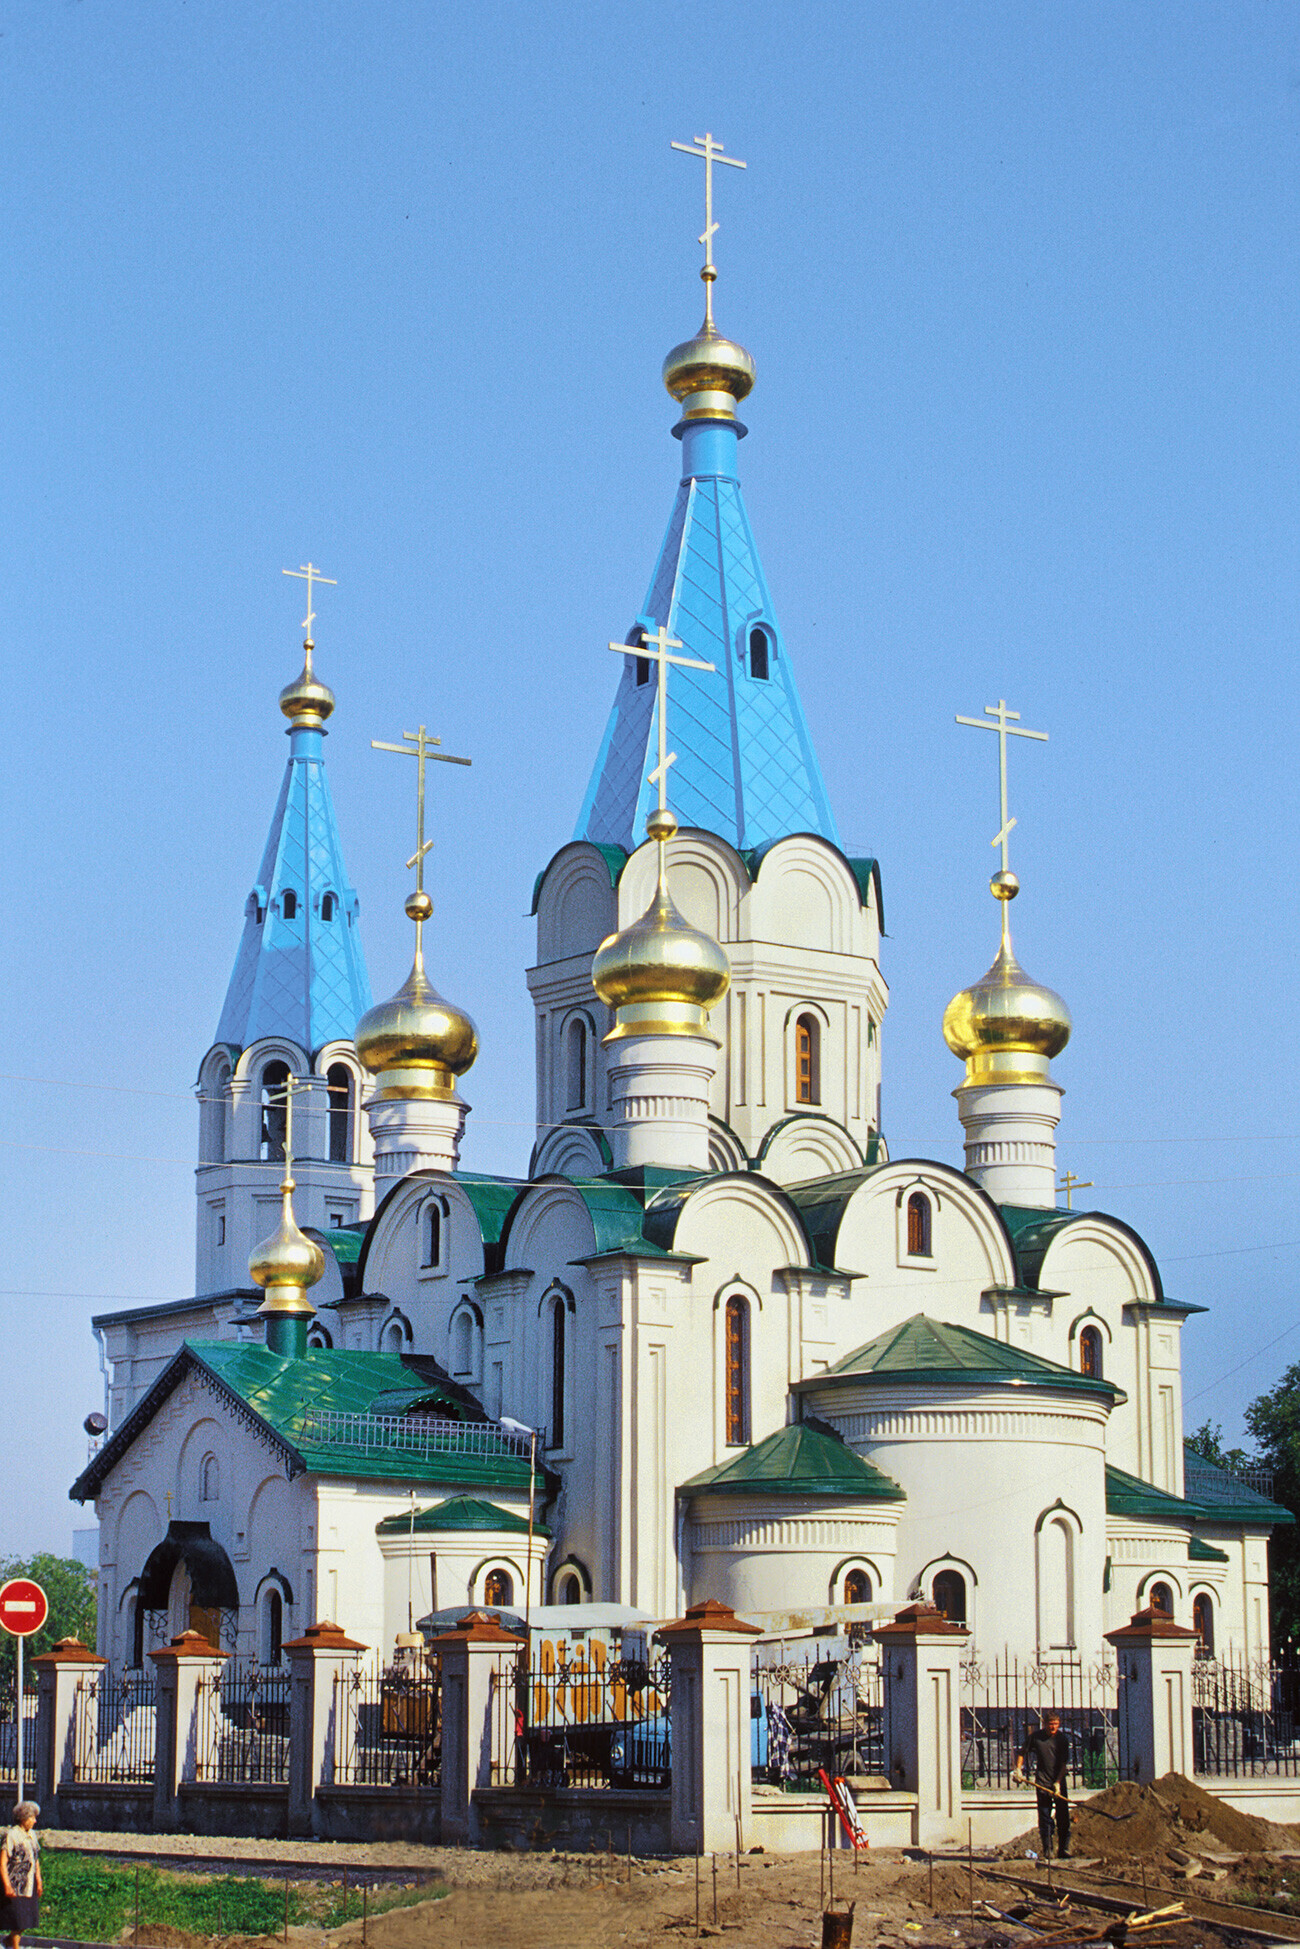 Cathédrale de l’Annonciation, vue sud-est. Sa construction a commencé en 1997 et a été achevée en 2003. Blagovechtchensk tire son nom du mot russe annonciation